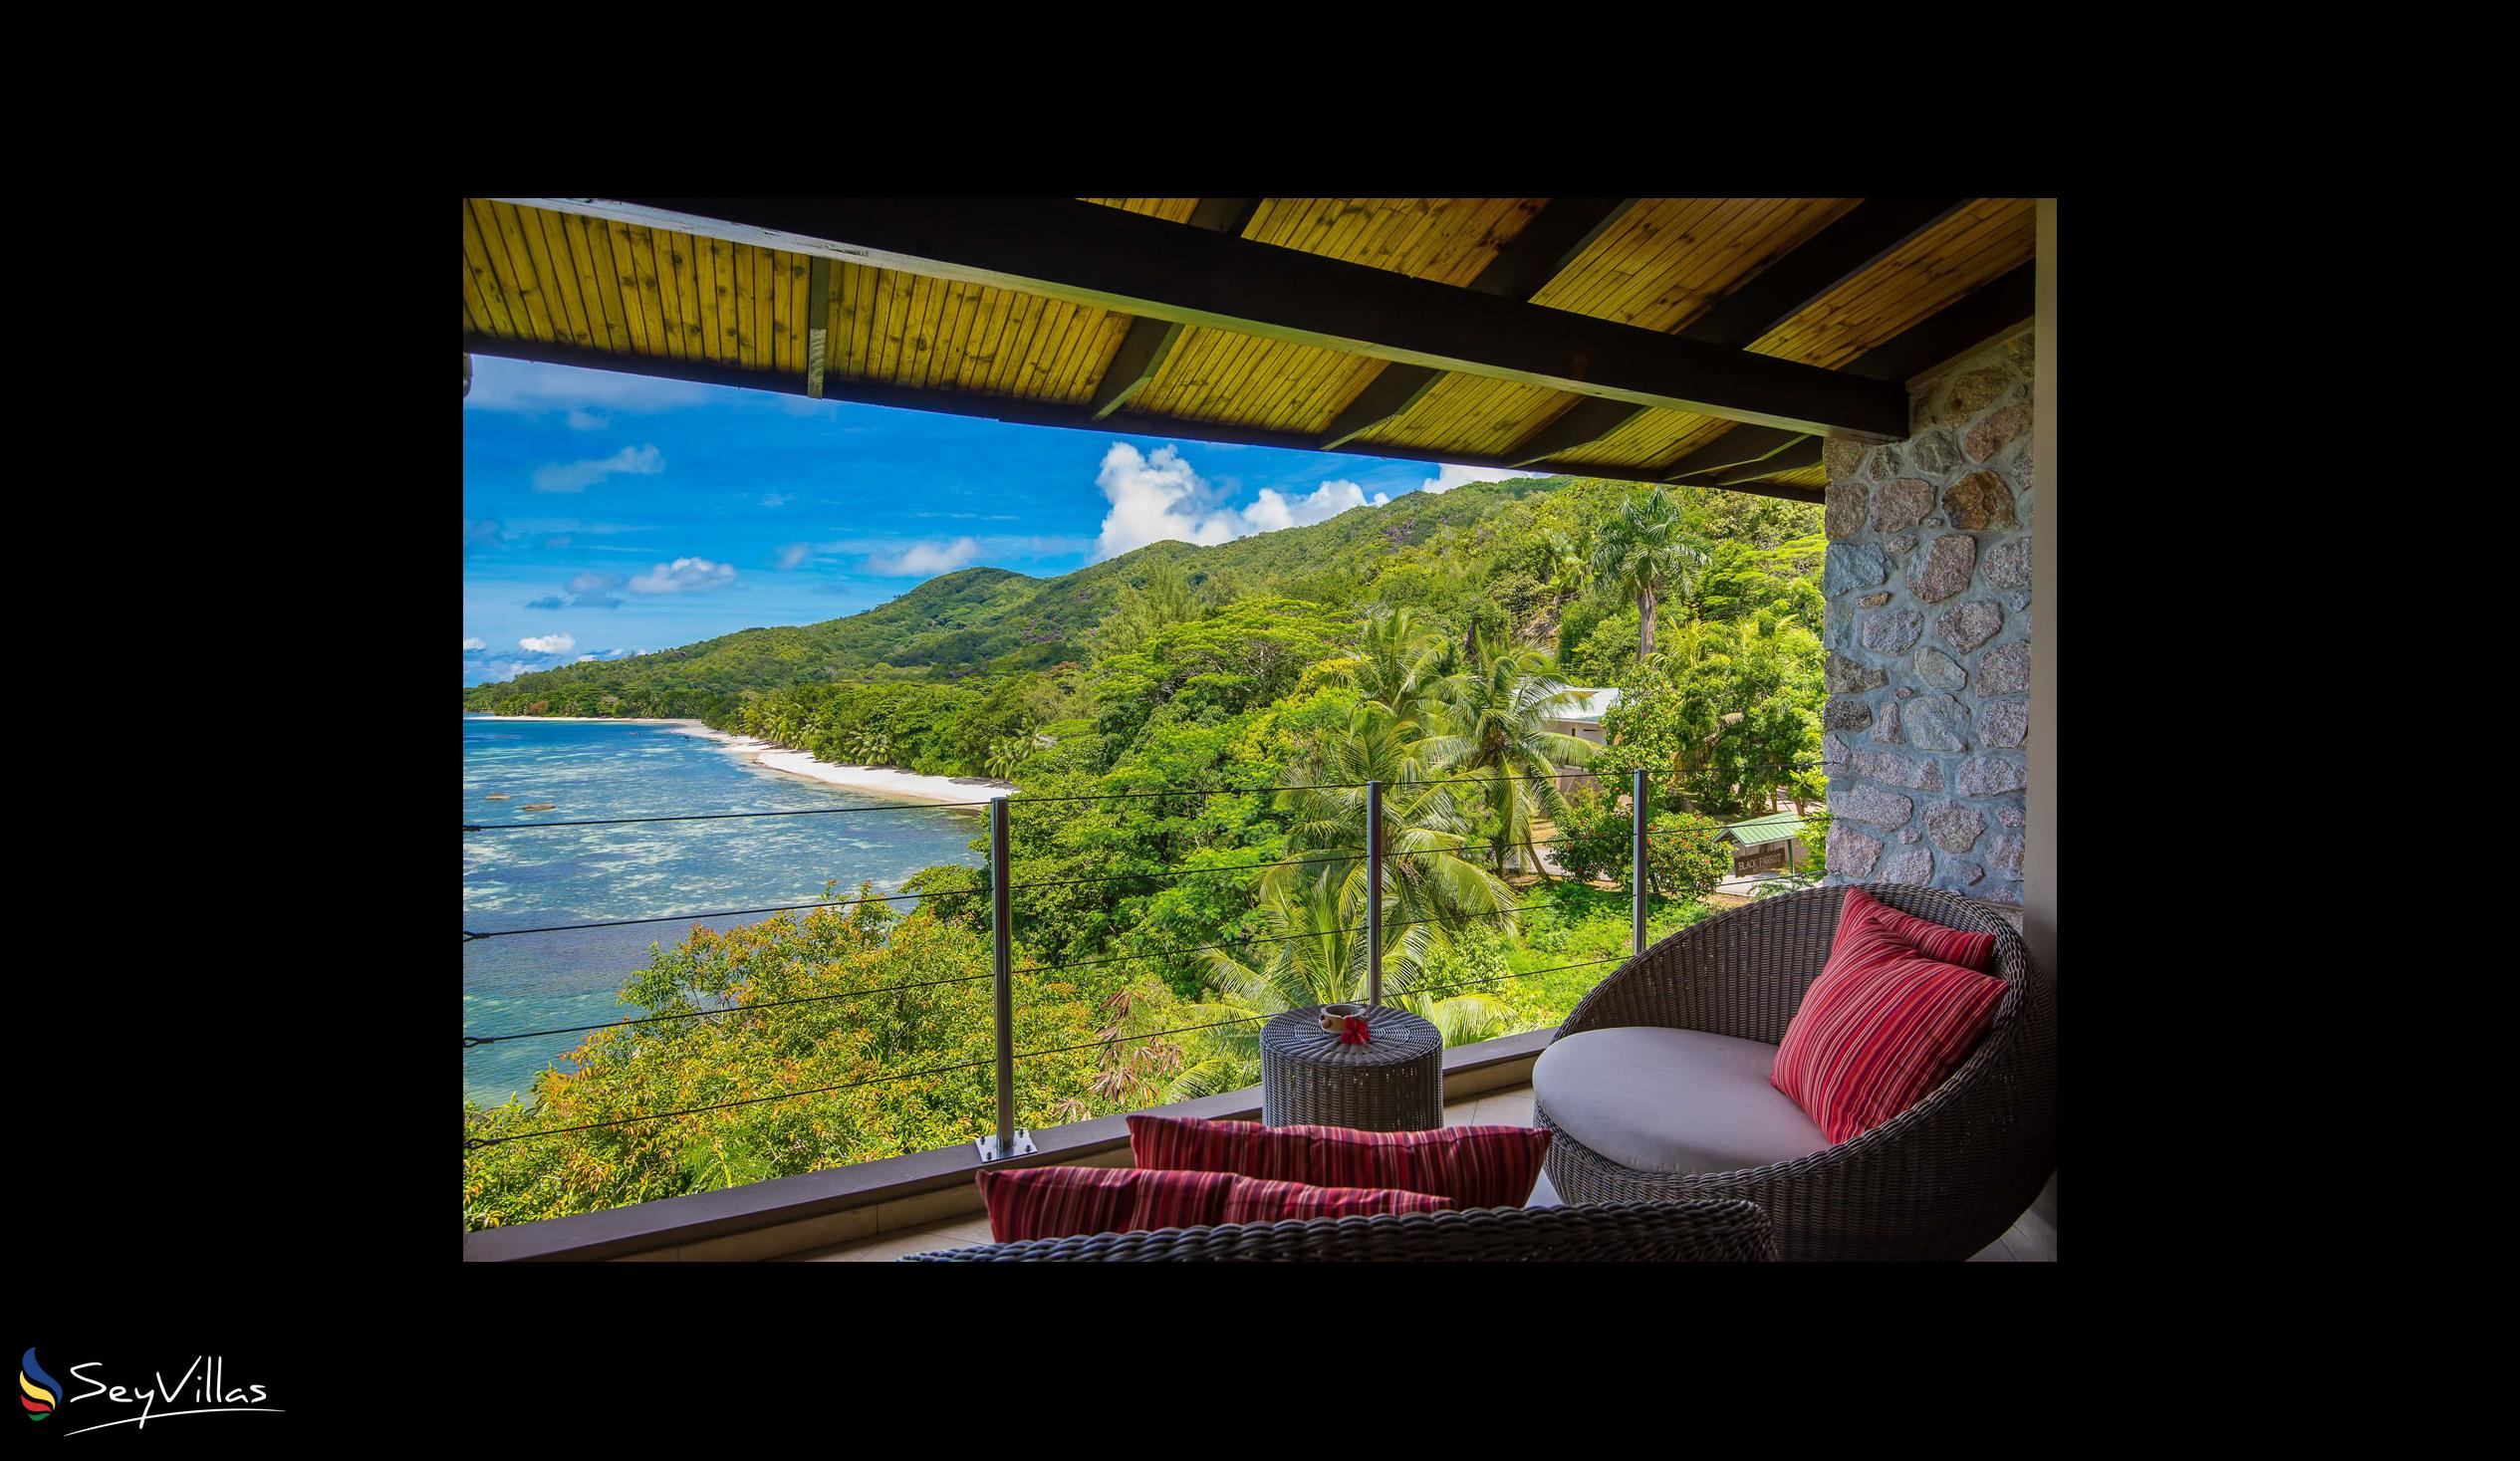 Photo 90: Coco de Mer & Black Parrot Suites - Black Parrot Junior Suite - Praslin (Seychelles)